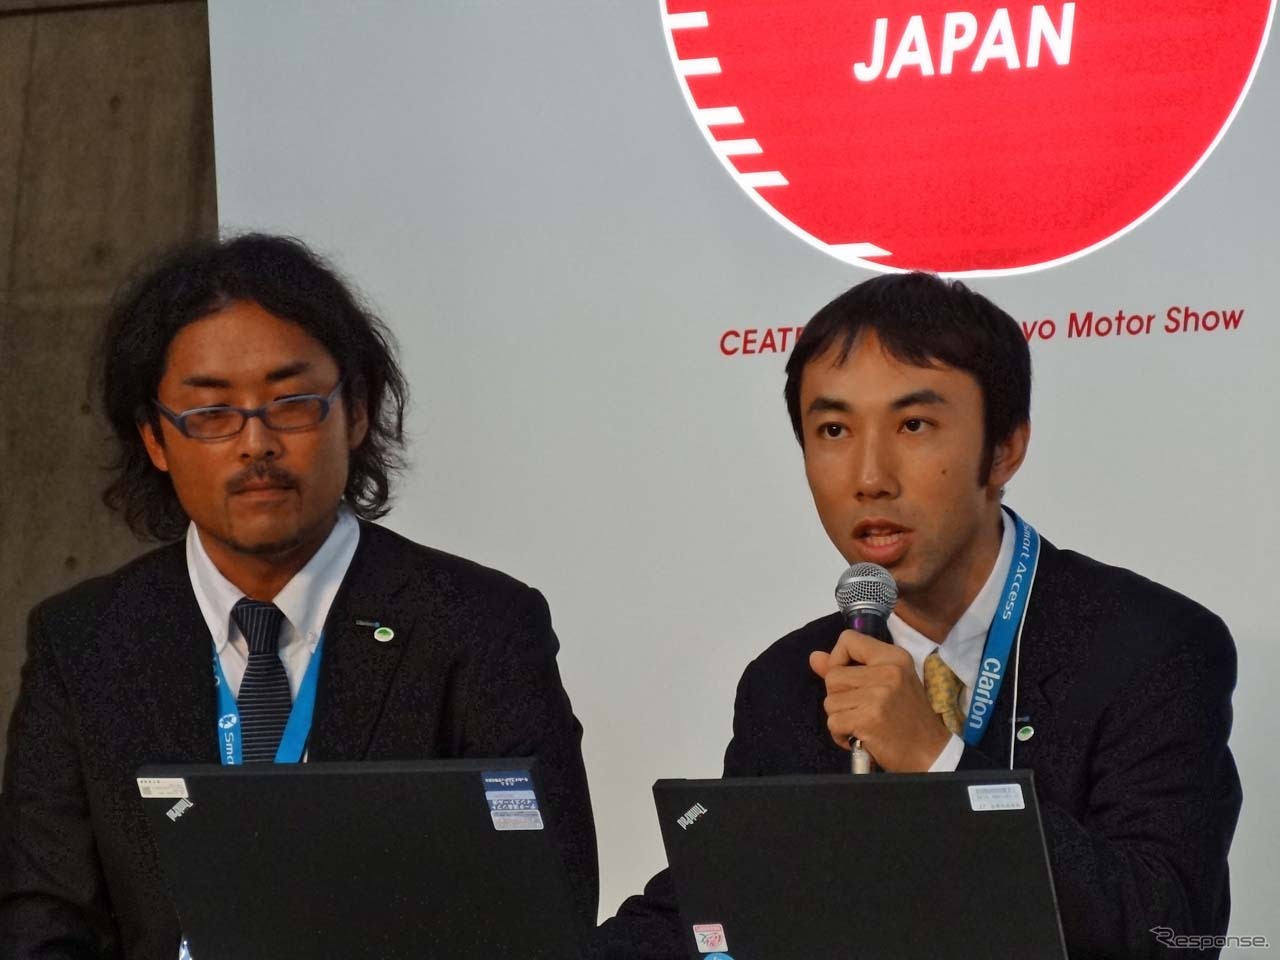 説明を行う音響スピーカー開発グループの高田直樹氏（右）、プロダクトデザイングループの宮脇将志氏（左）